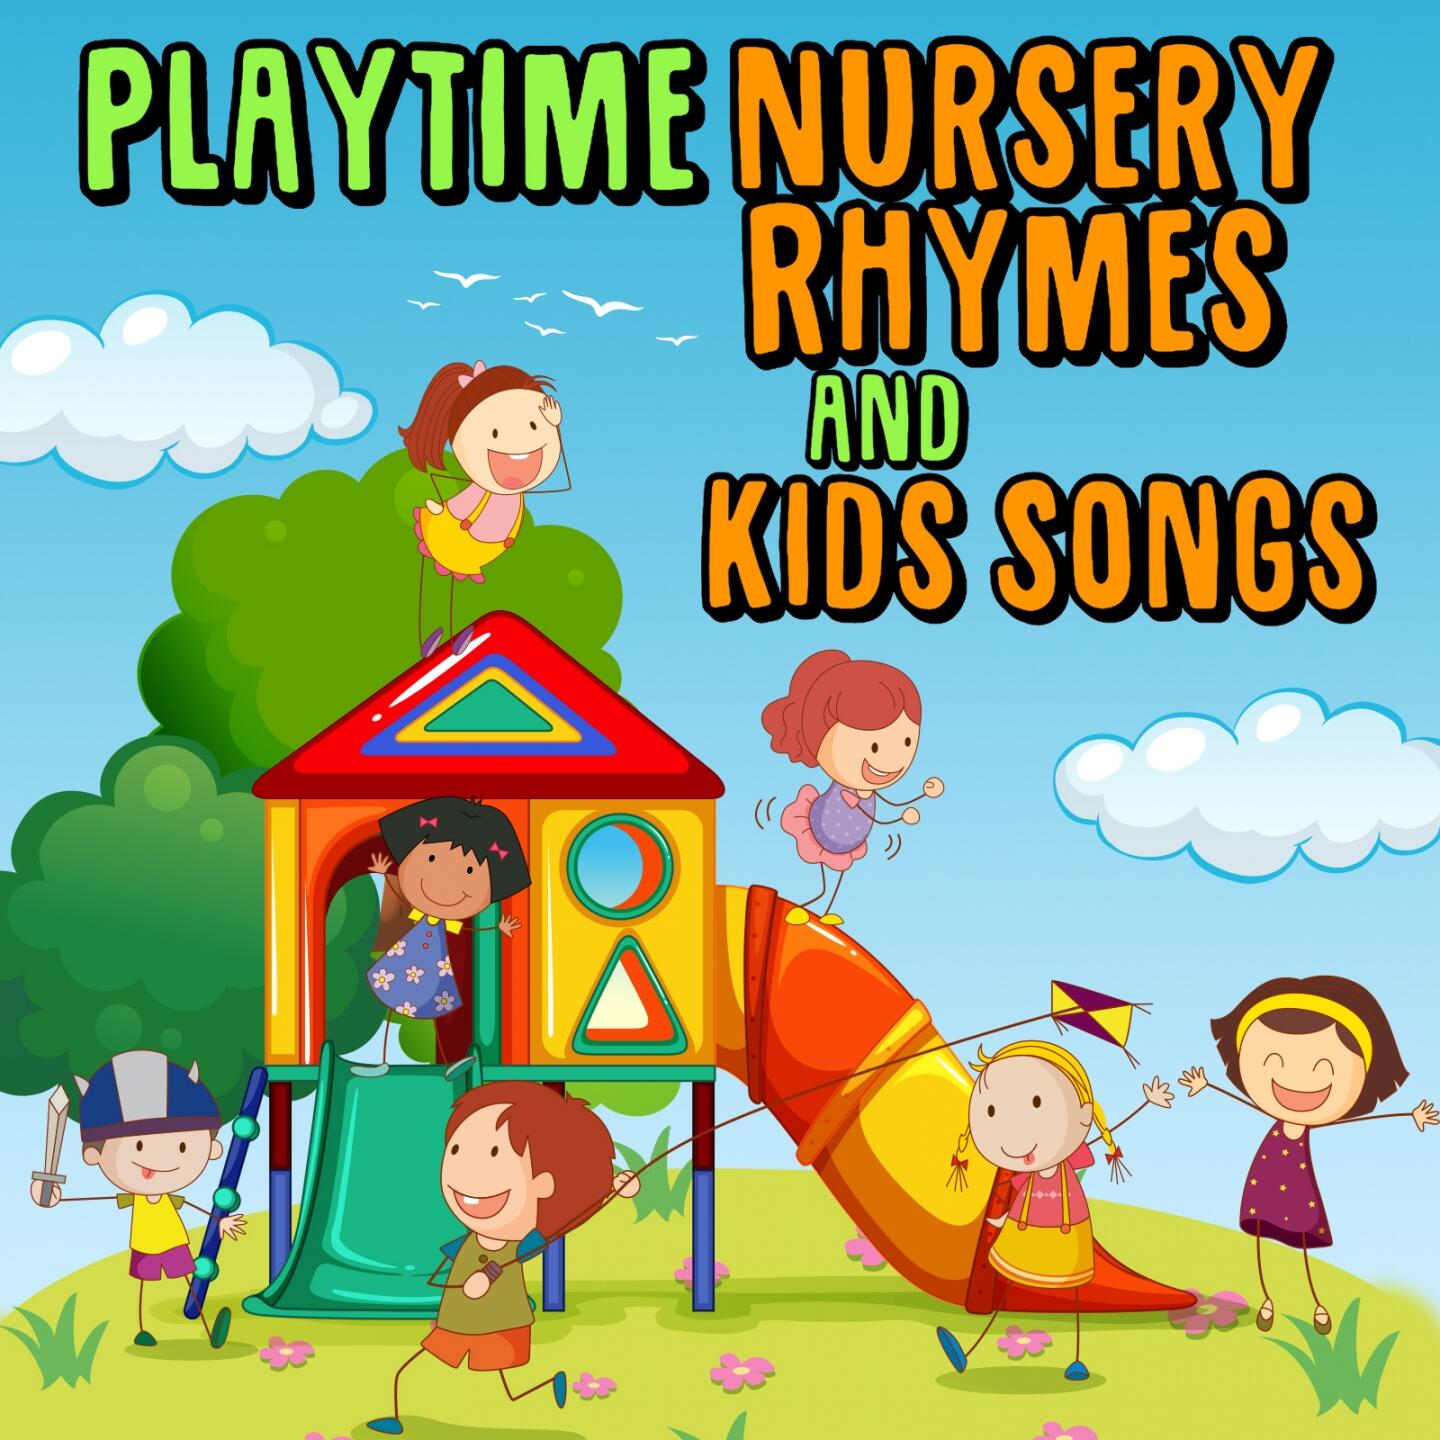 Nursery Rhymes and Kids Songs - Playtime Nursery Rhymes and Kids Songs ...